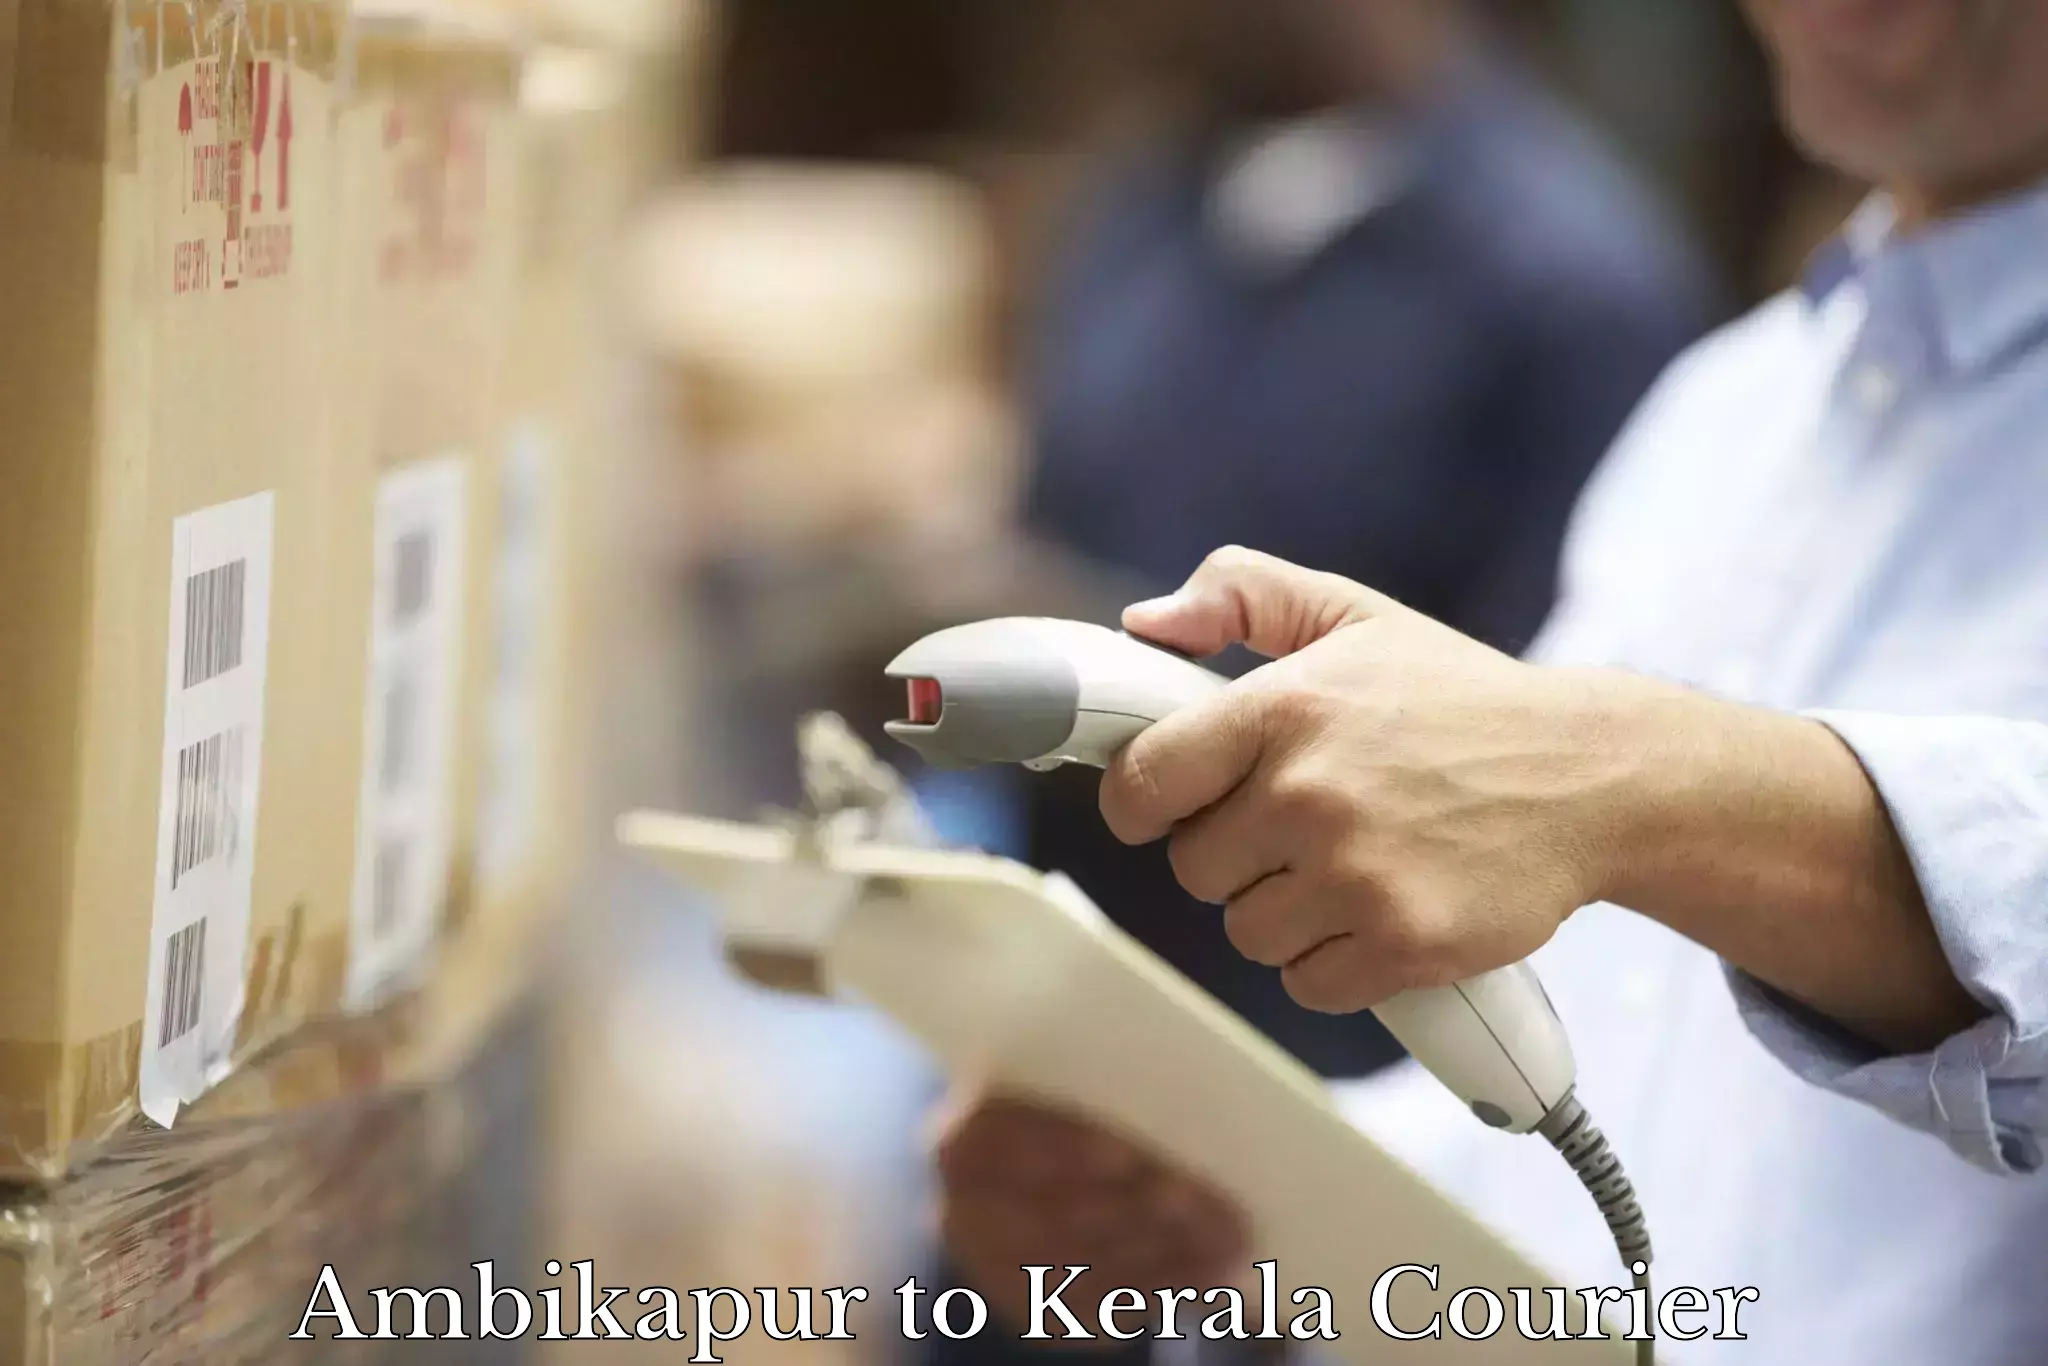 Express logistics providers Ambikapur to Kuttikol